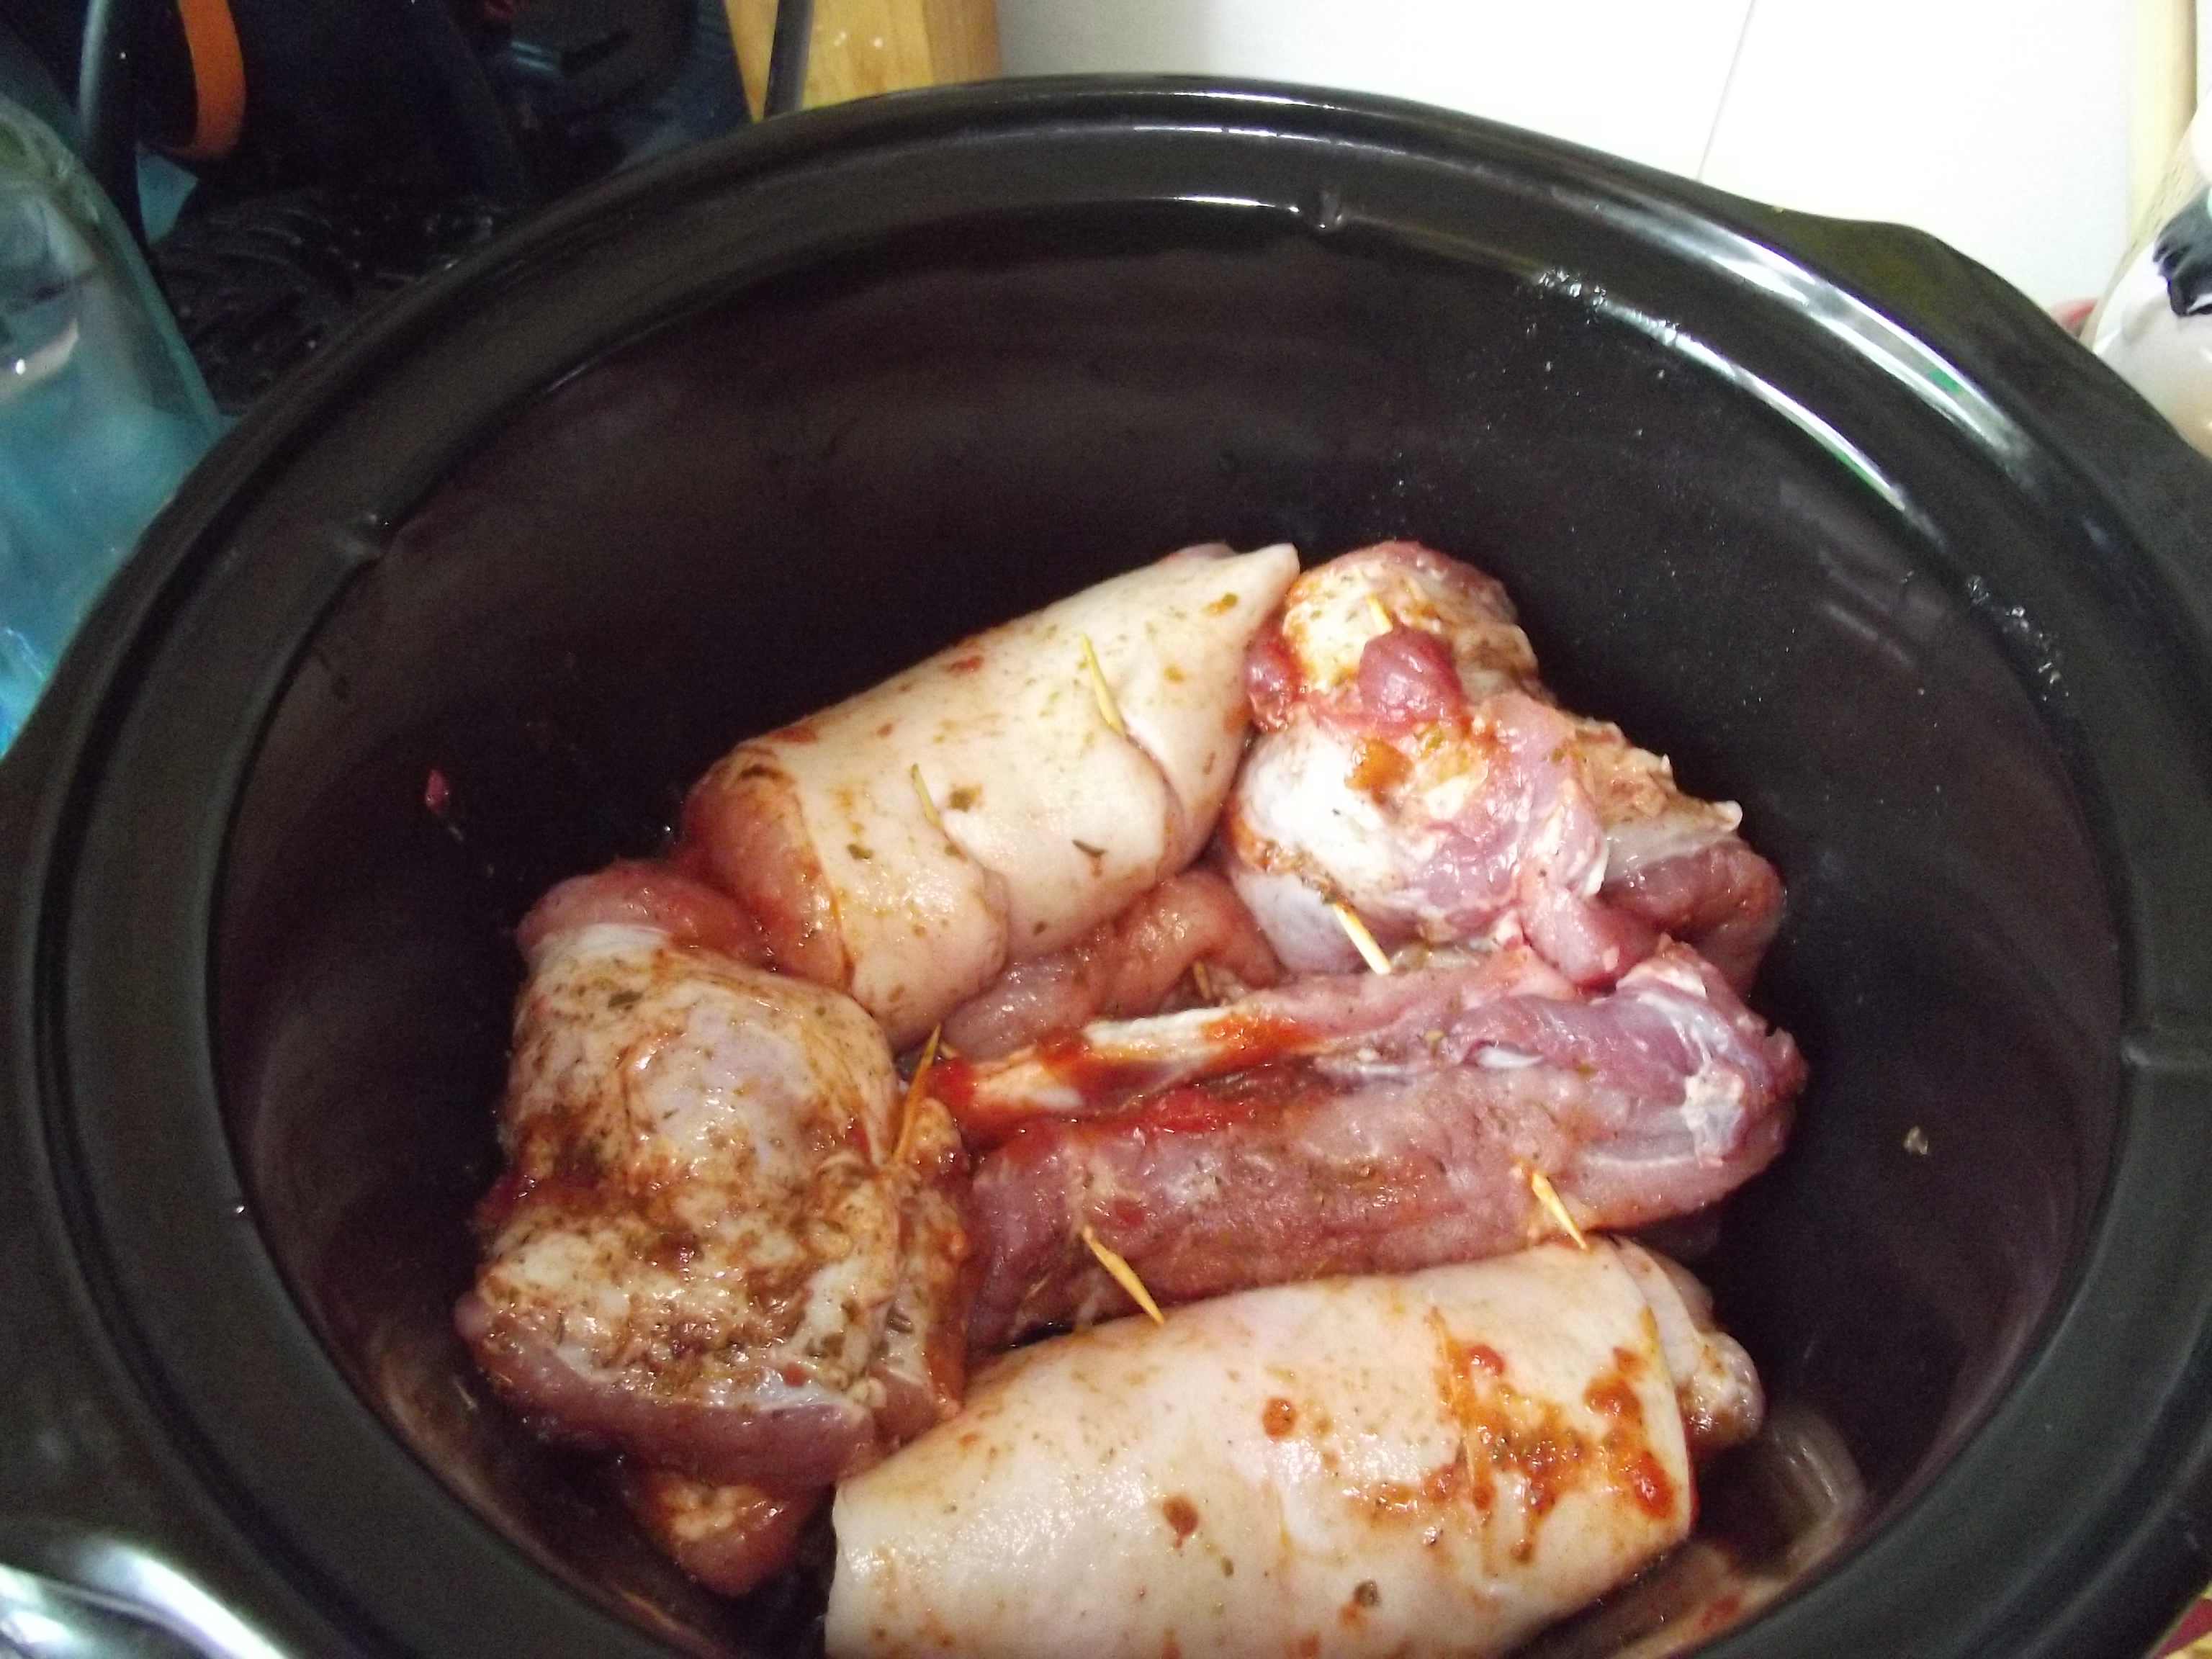 Rulouri din piept de porc la slow cooker Crock-Pot